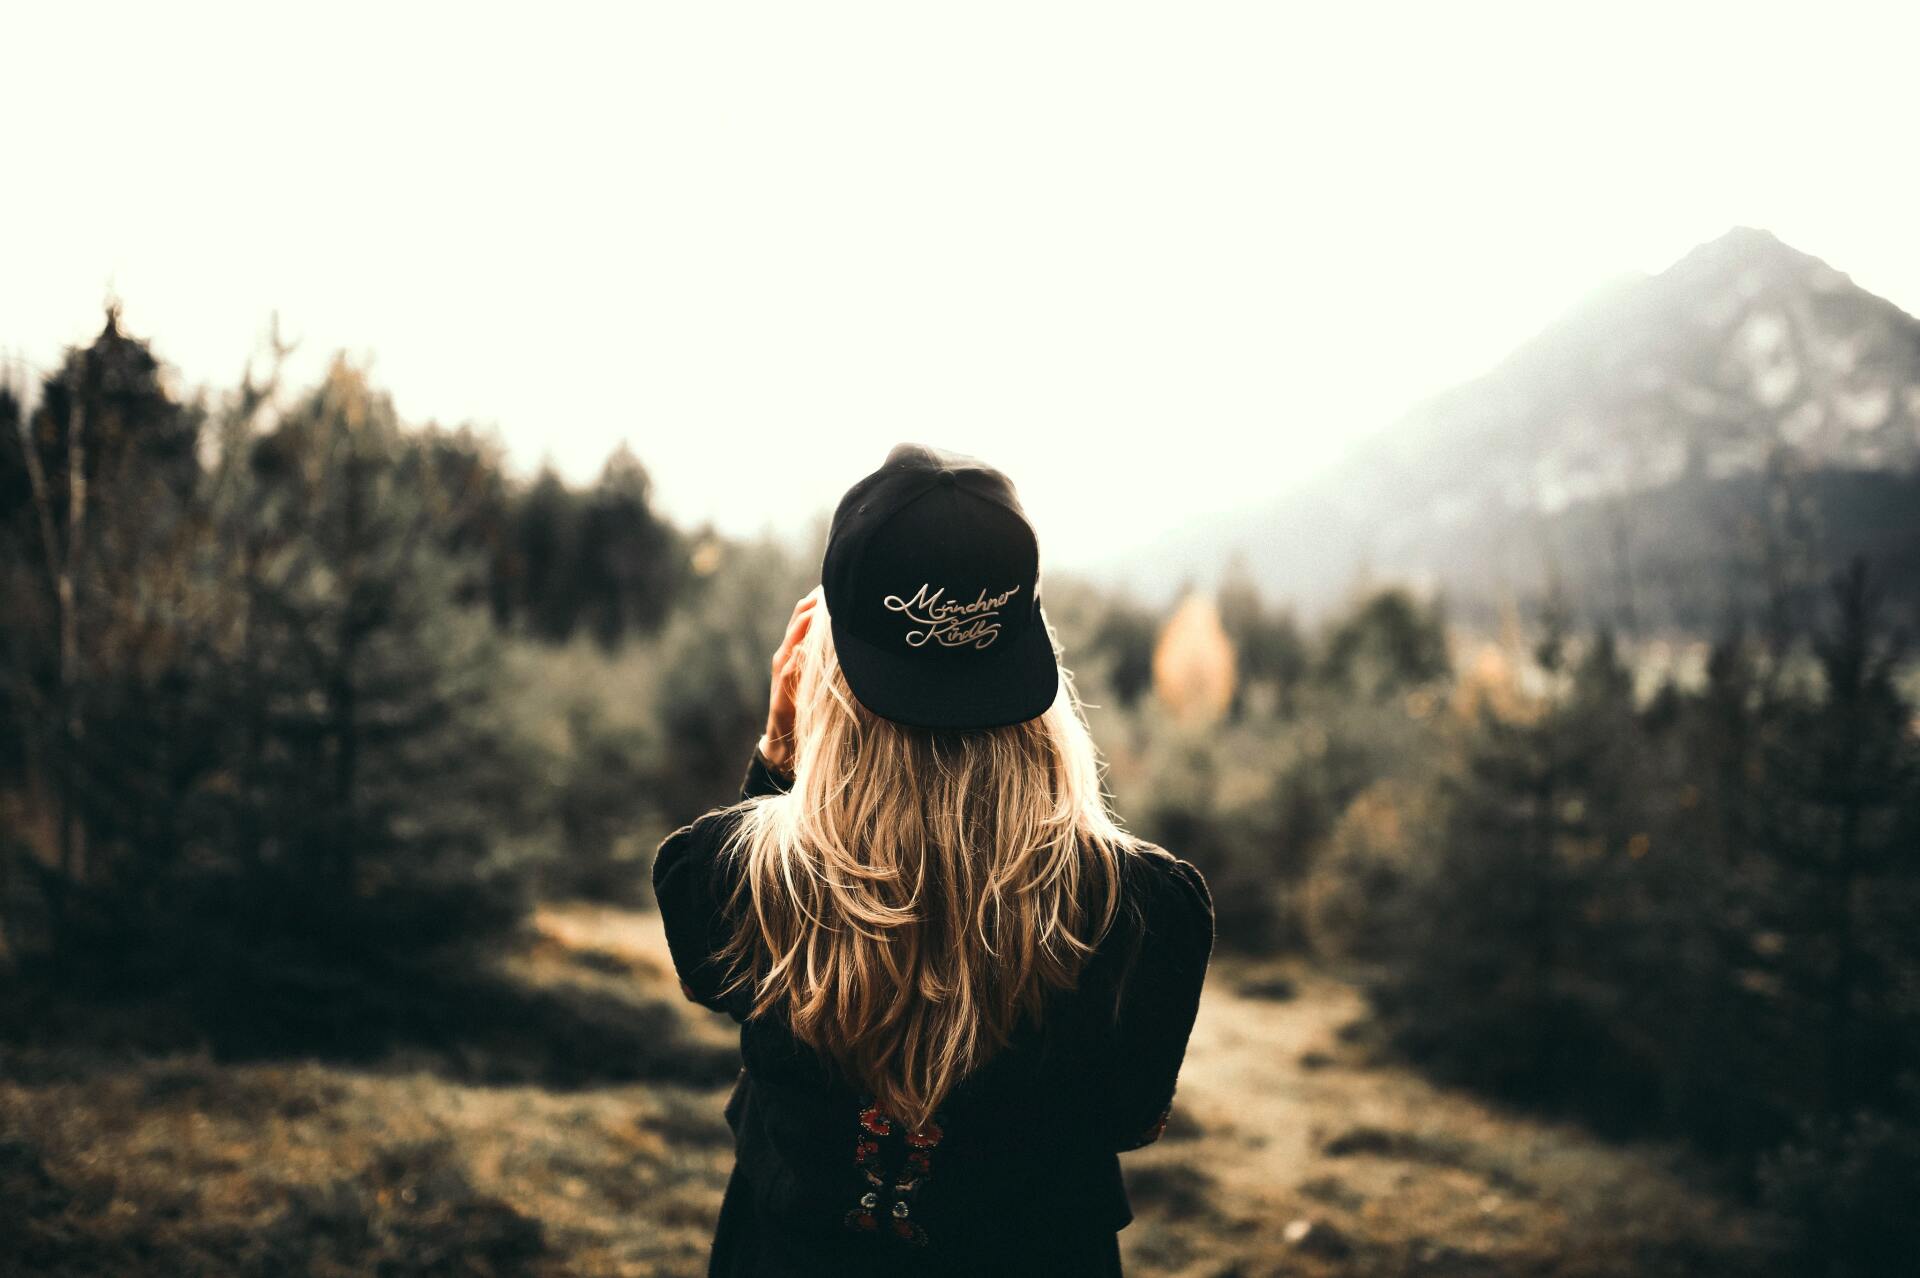 foto de alta calidad de mujer en bosque con gorra impresa